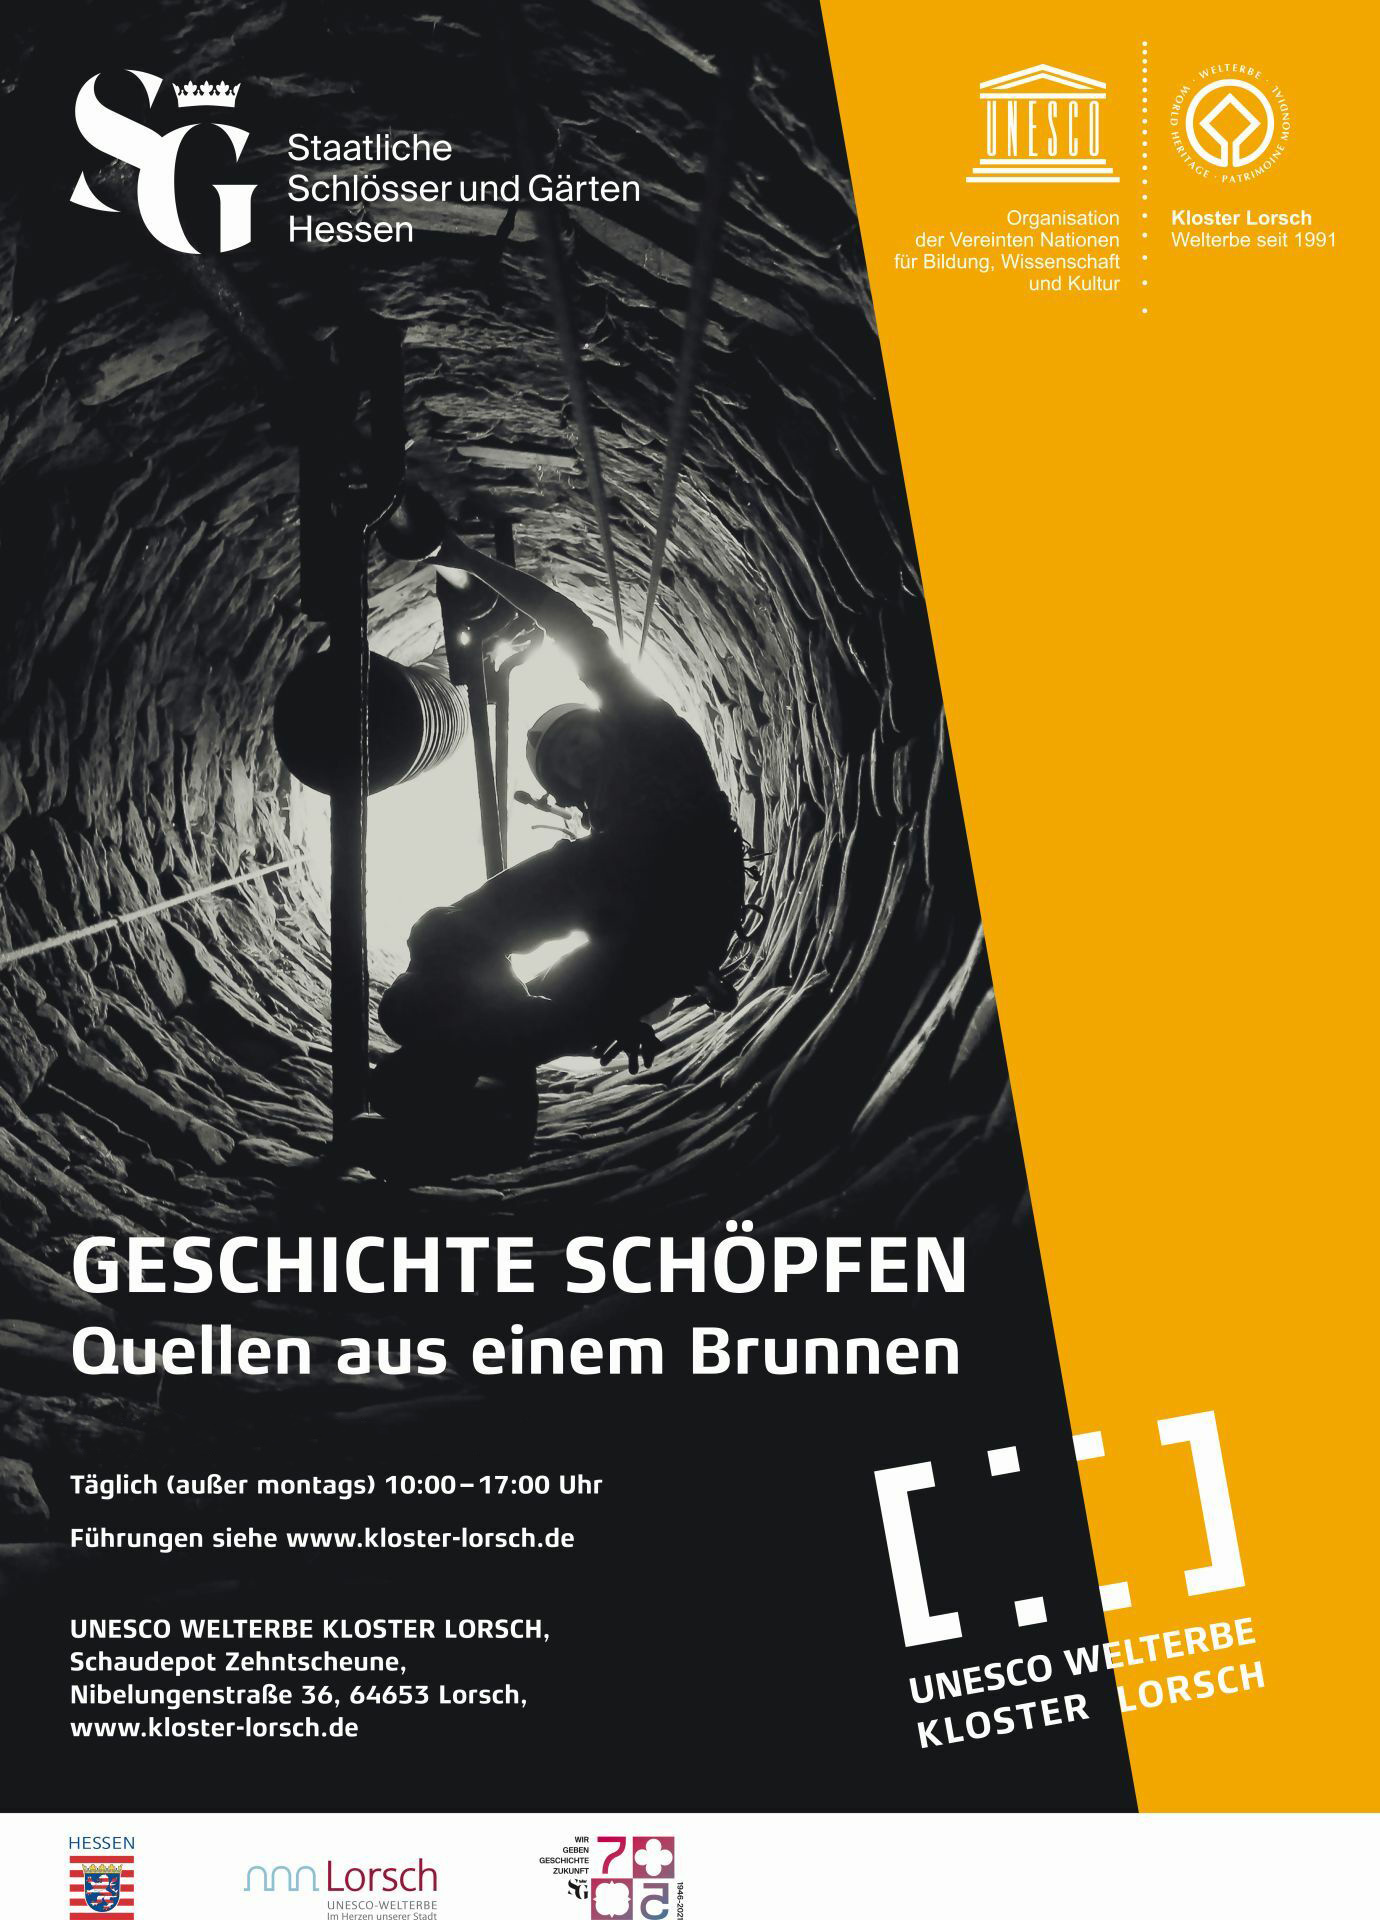 Plakat zur Ausstellung "Geschichte schöpfen" - Link zur Ausstellungsseite